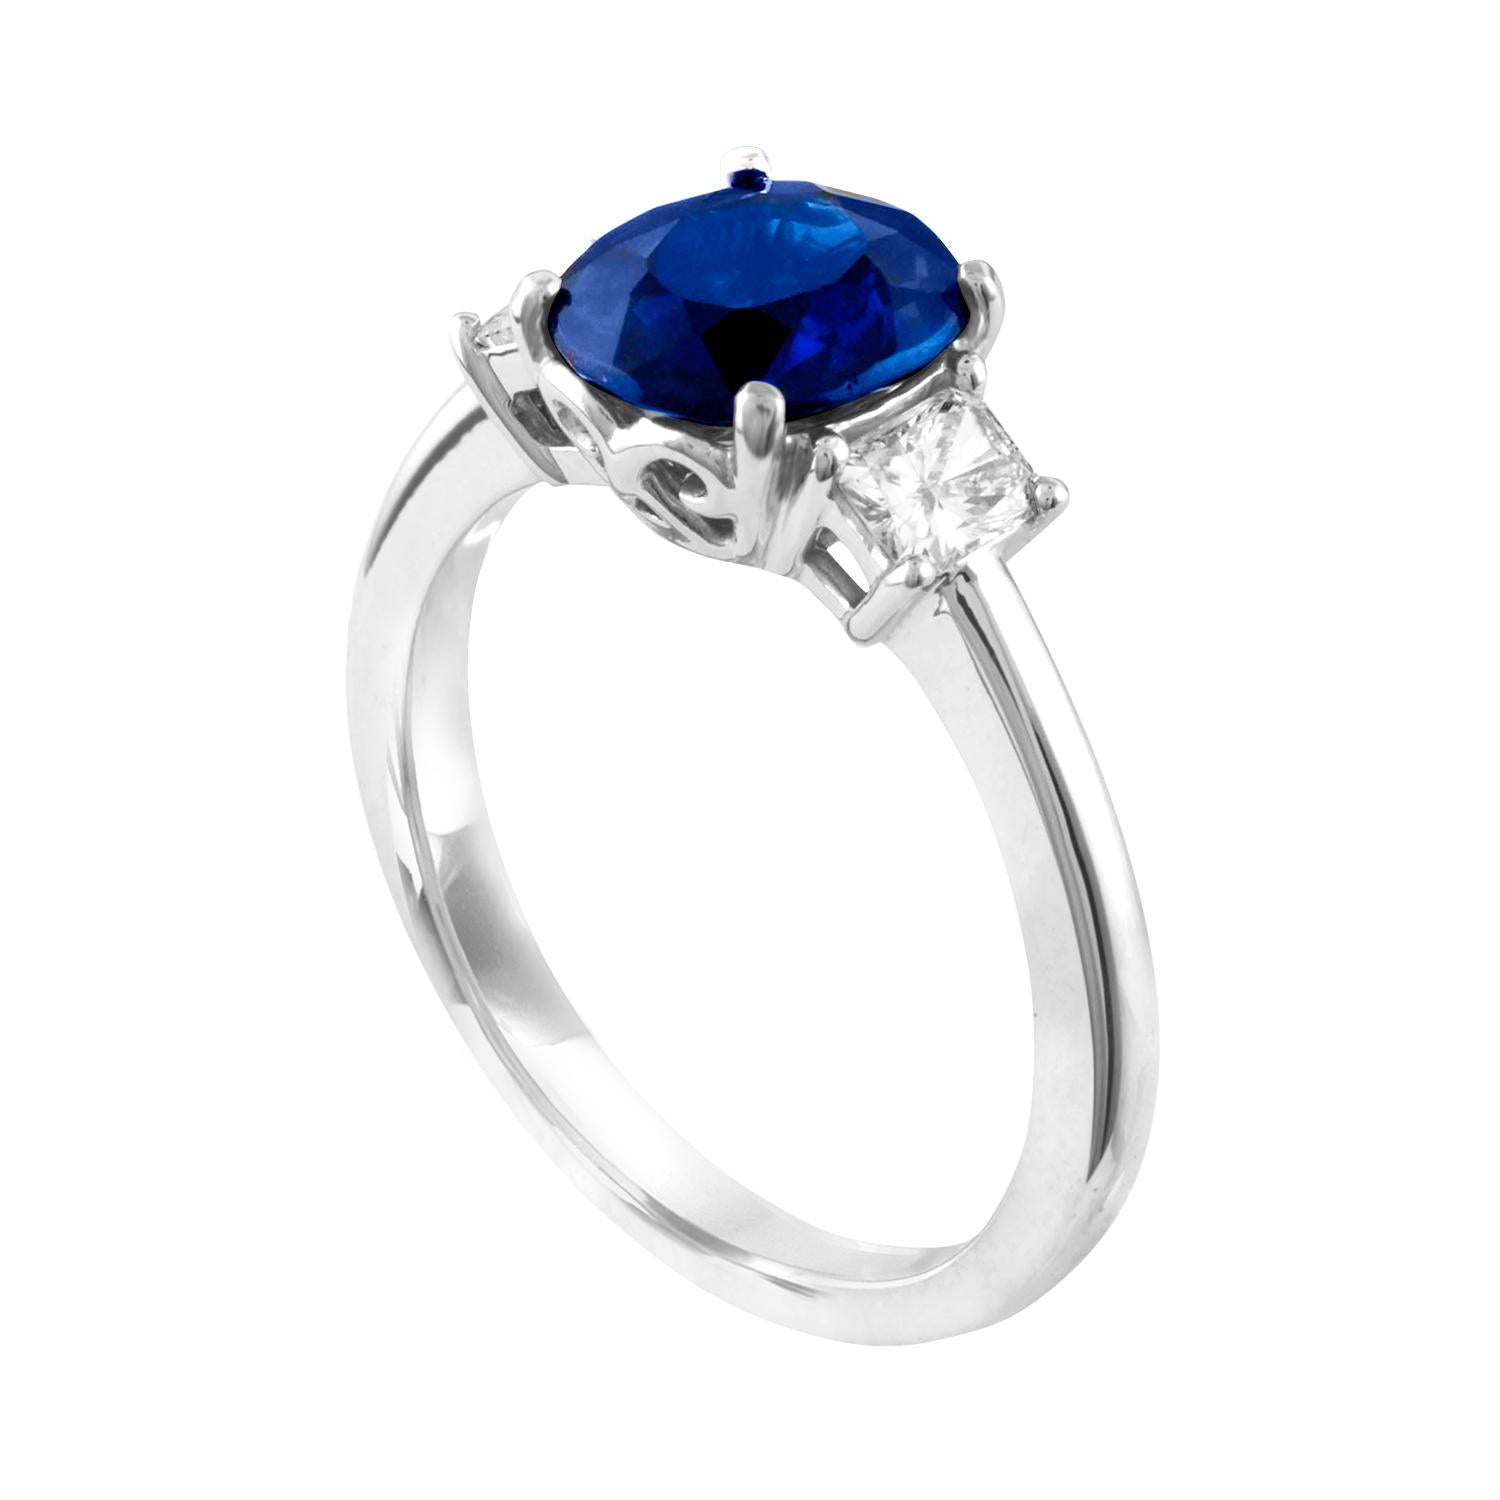 Atemberaubender Dreistein-Ring mit Saphir und Diamant
Der Ring ist aus 18K Weißgold
Der Cushion Blue Sapphire hat 2,24 Karat und ist aus Australien
Der Saphir ist GIA-zertifiziert.
Es gibt 2 Diamanten im Strahlenschliff 0,41 Karat F VS
Der Ring ist